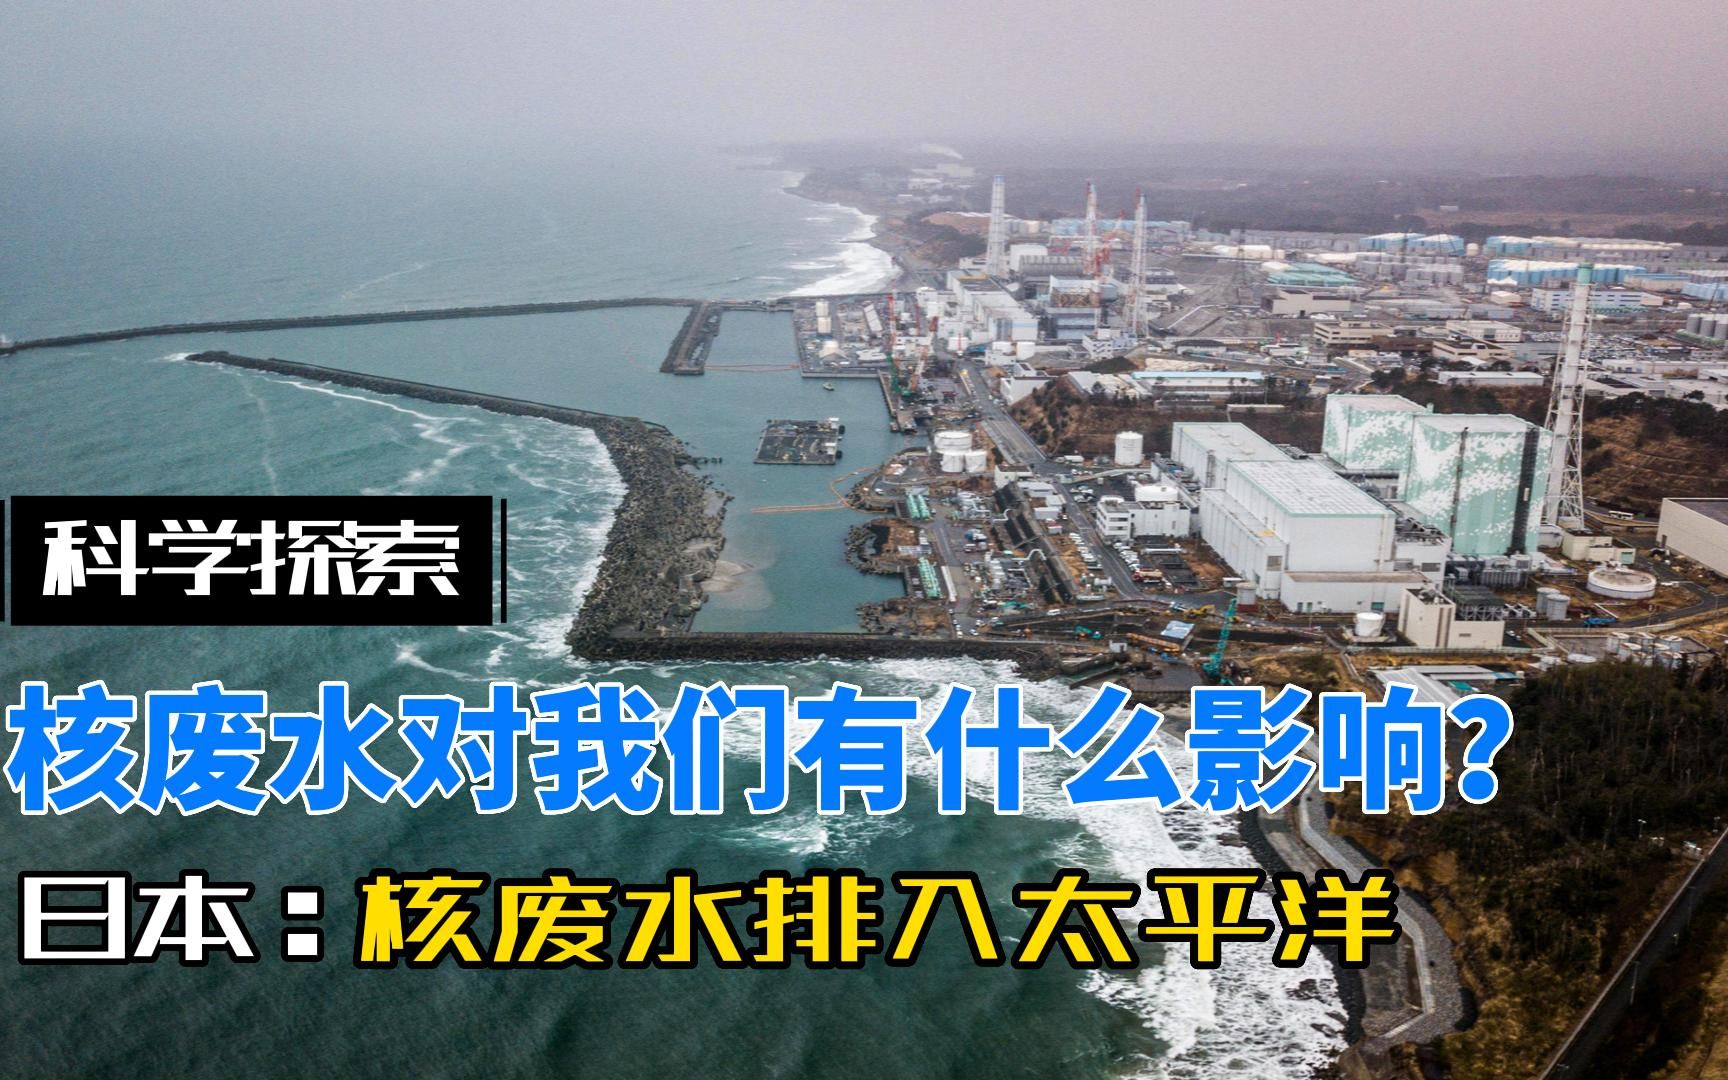 极不负责,日本将福岛核废水排入太平洋,核废水对我们有什么影响